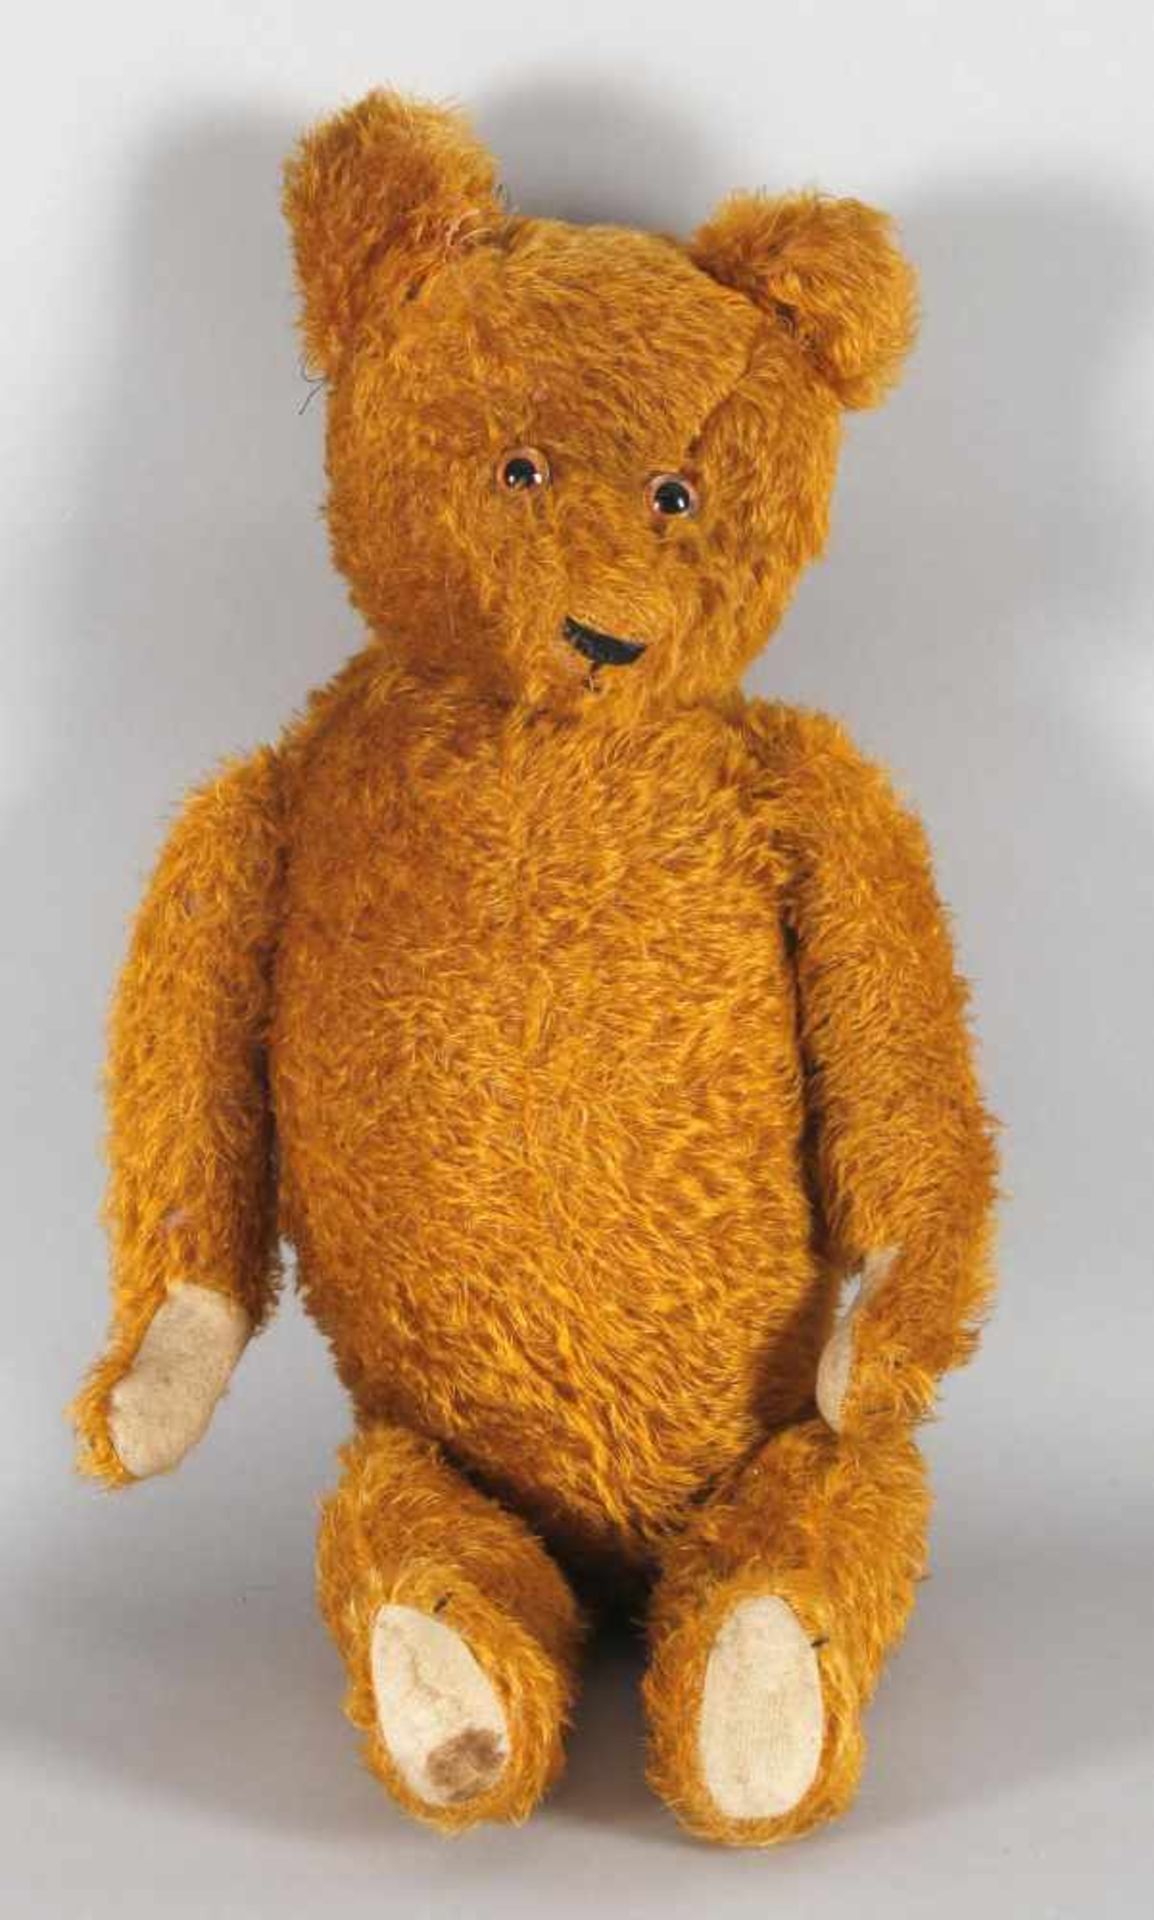 Zimtbrauner Teddybär mit braunen Glas-Augen, wohl ein Steiff-Bär